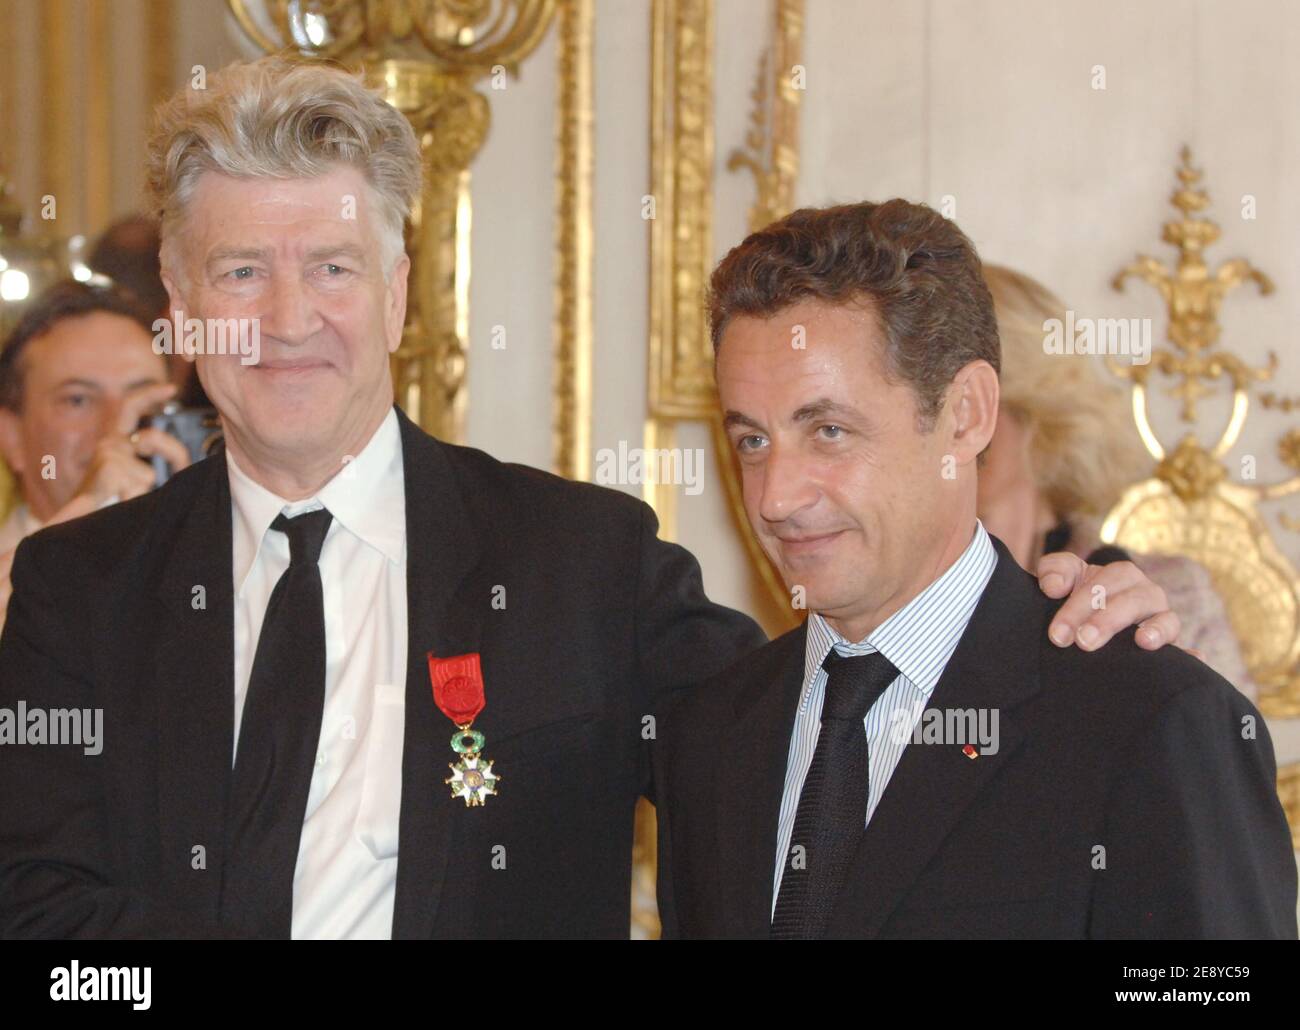 "Frankreichs Präsident Nicolas Sarkozy (L) spricht mit dem US-Regisseur David Lynch, nachdem Lynch am 1. Oktober 2007 den Titel "Officier de la Legion d'Honneur" oder Offizier der Ehrenlegion, Frankreichs höchste Auszeichnung im Elysee-Palast in Paris, Frankreich, erhalten hat. Foto von Witt/Pool/ABACAPRESS.COM' Stockfoto